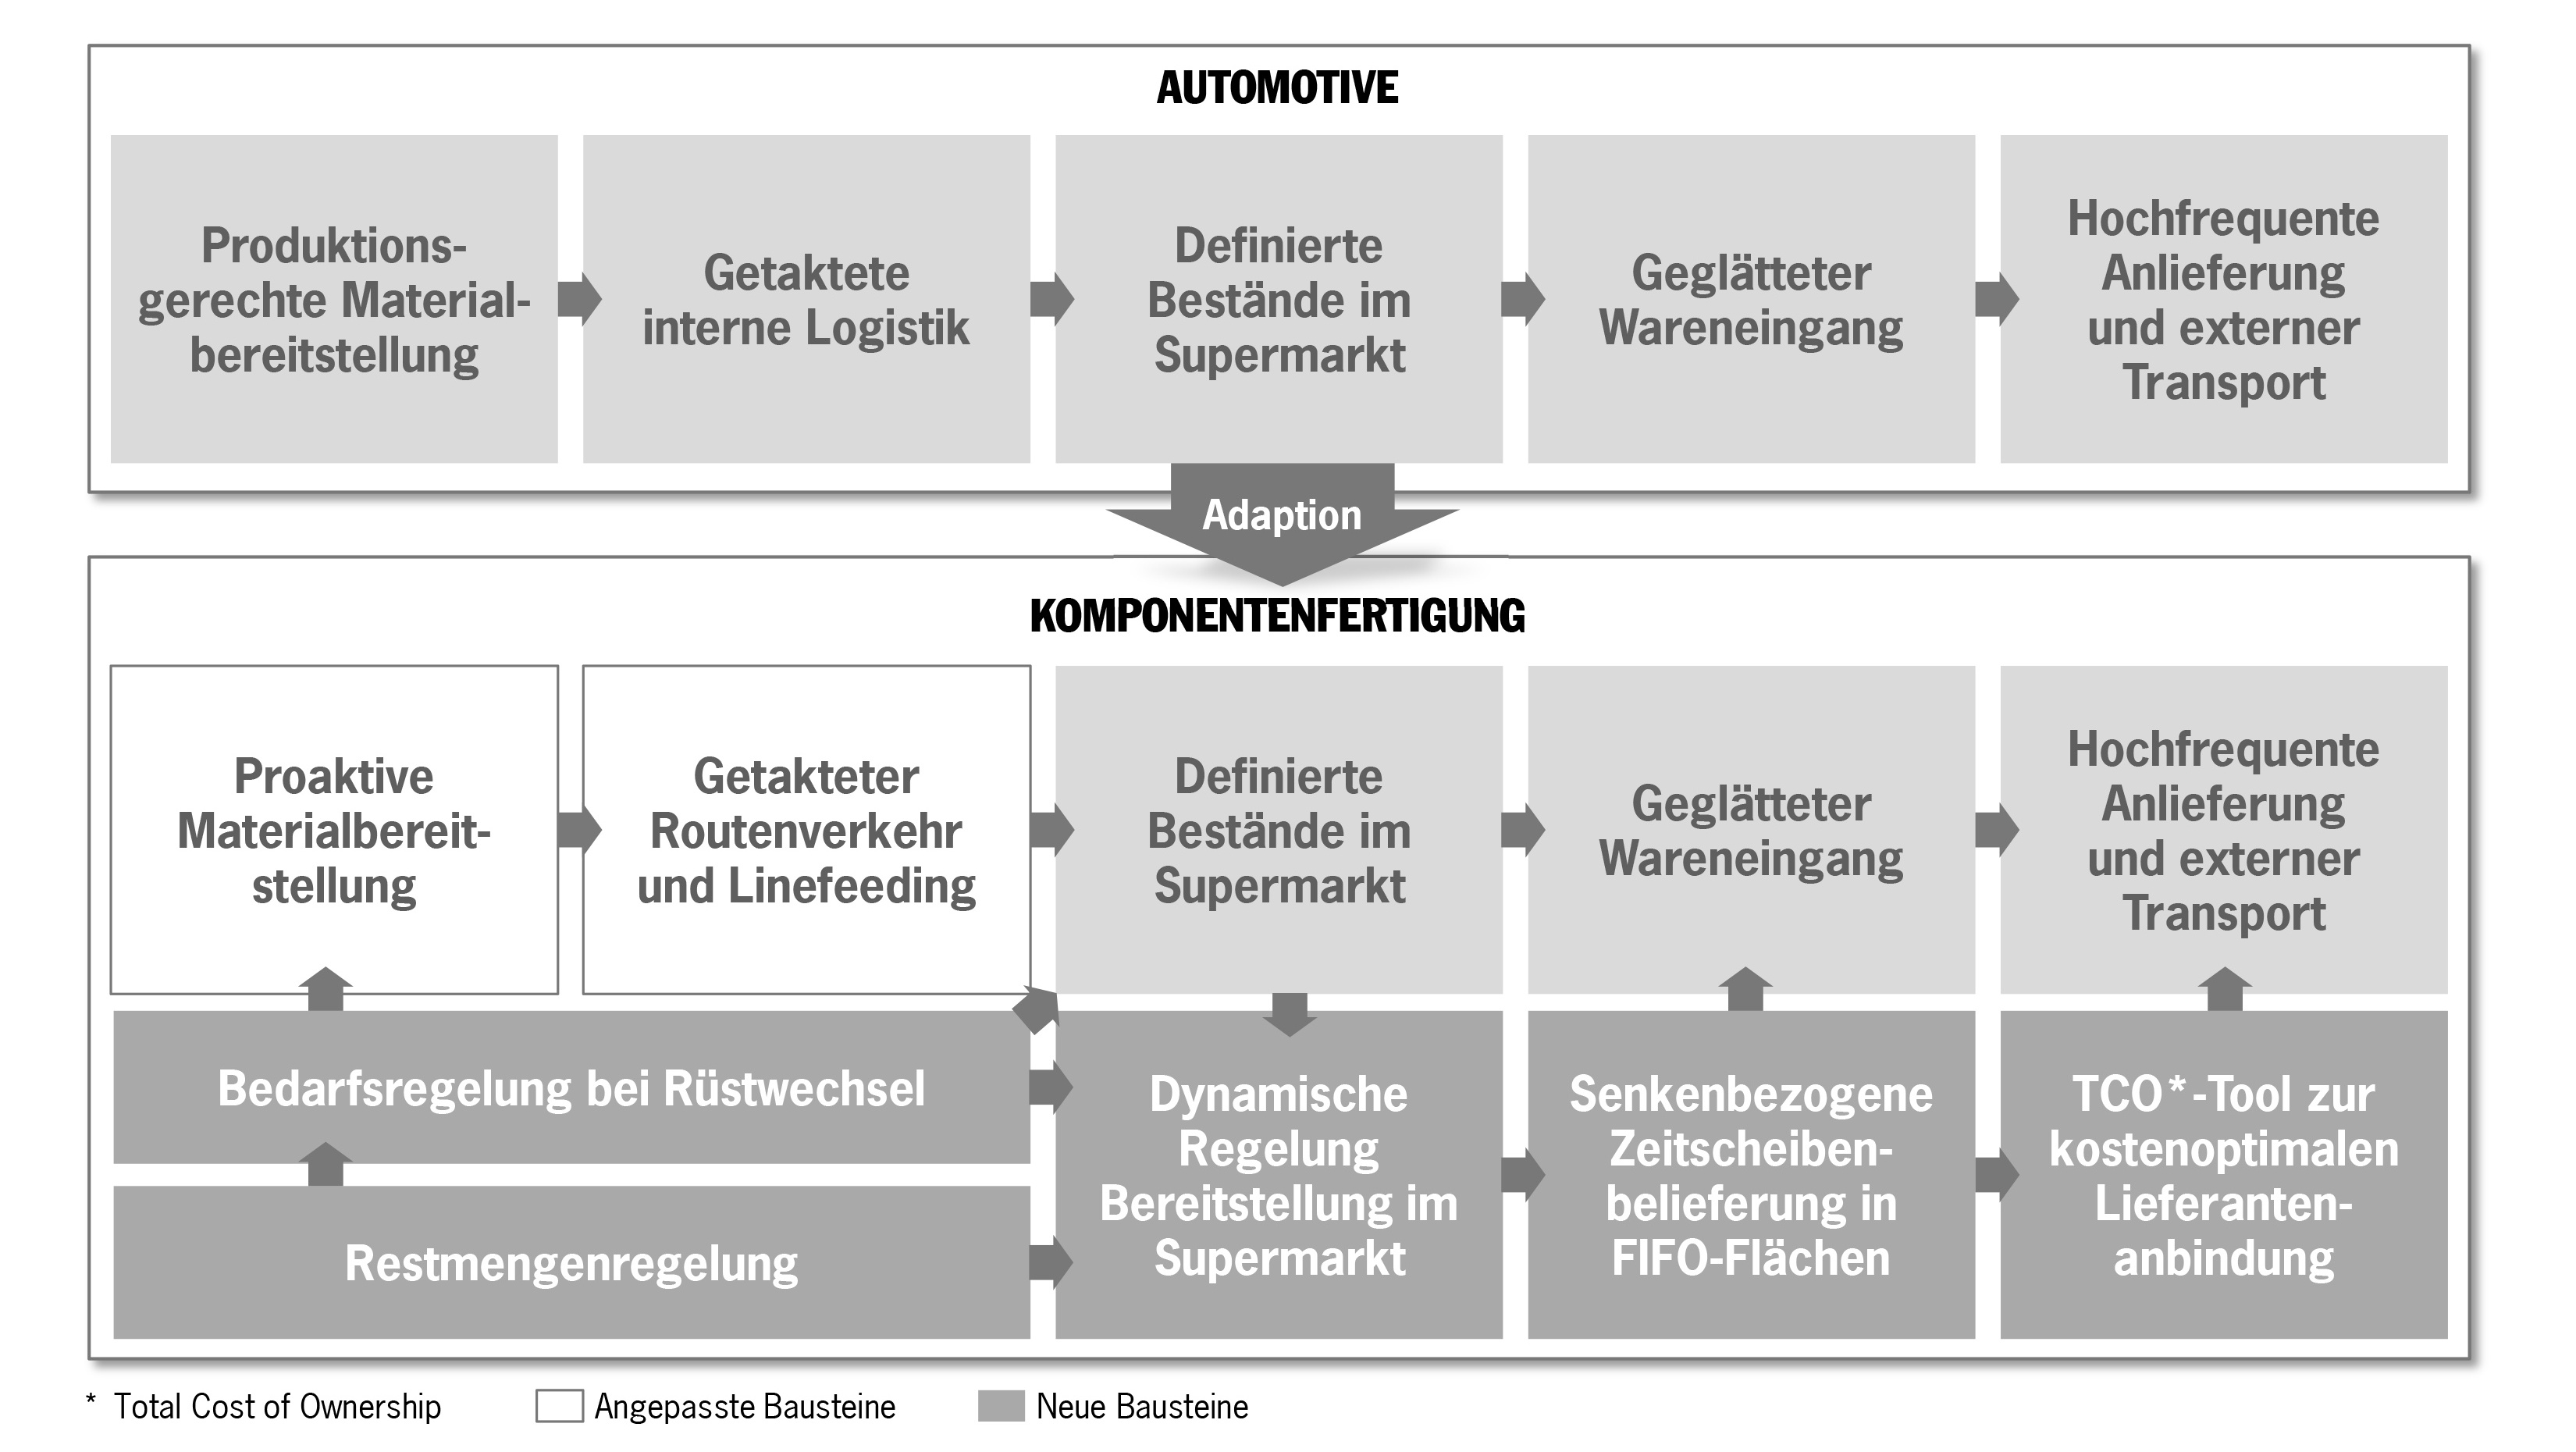 Adaption für die Komponentenfertigung, 2016, Porsche Consulting GmbH